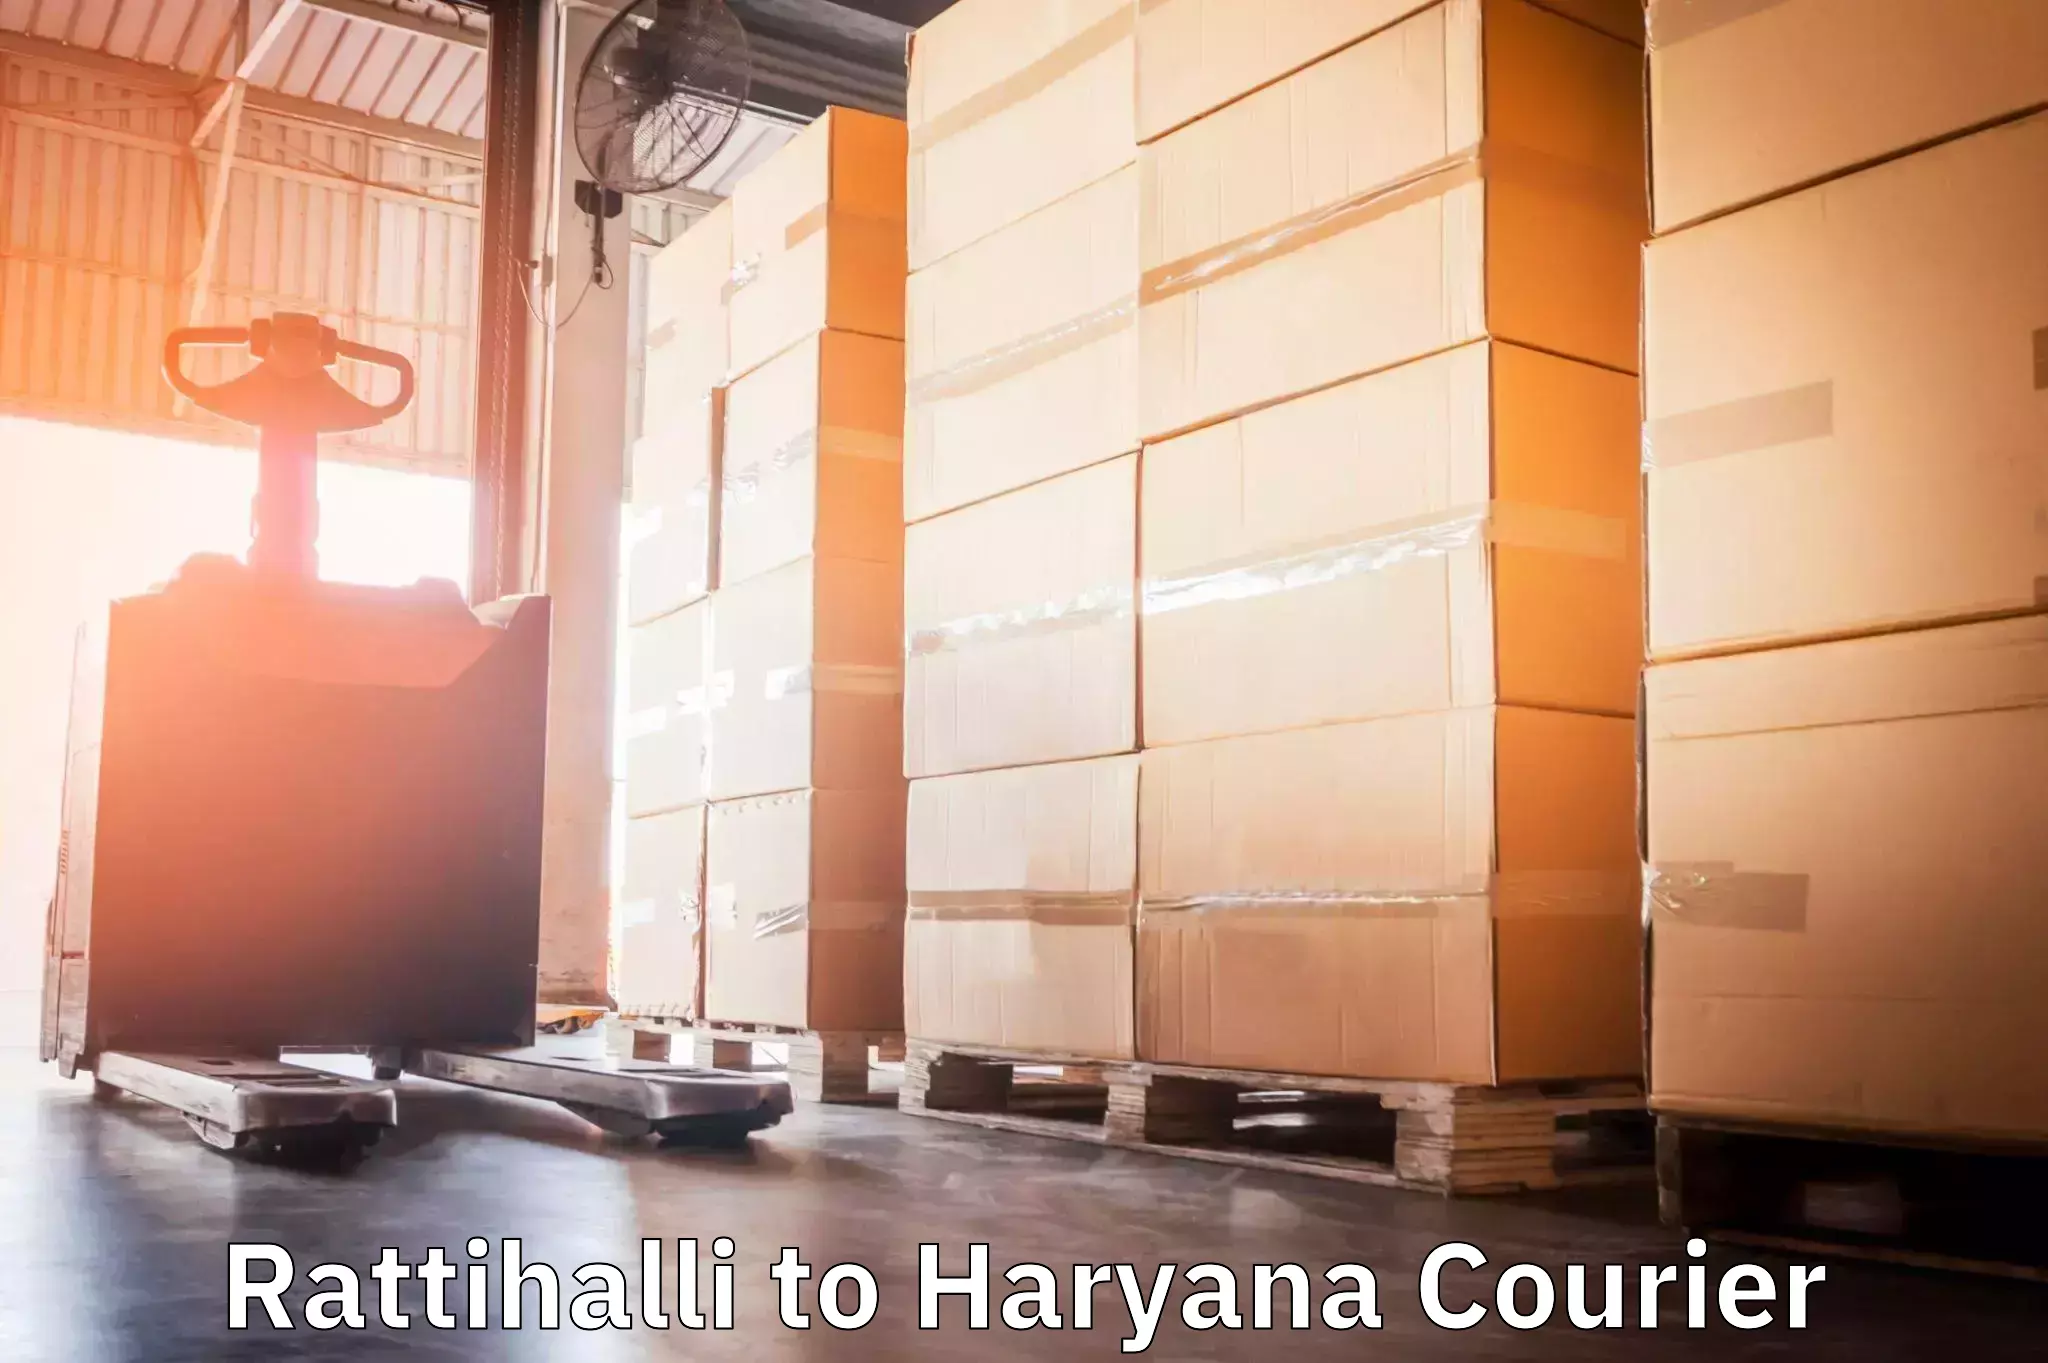 Next-day freight services Rattihalli to Bilaspur Haryana